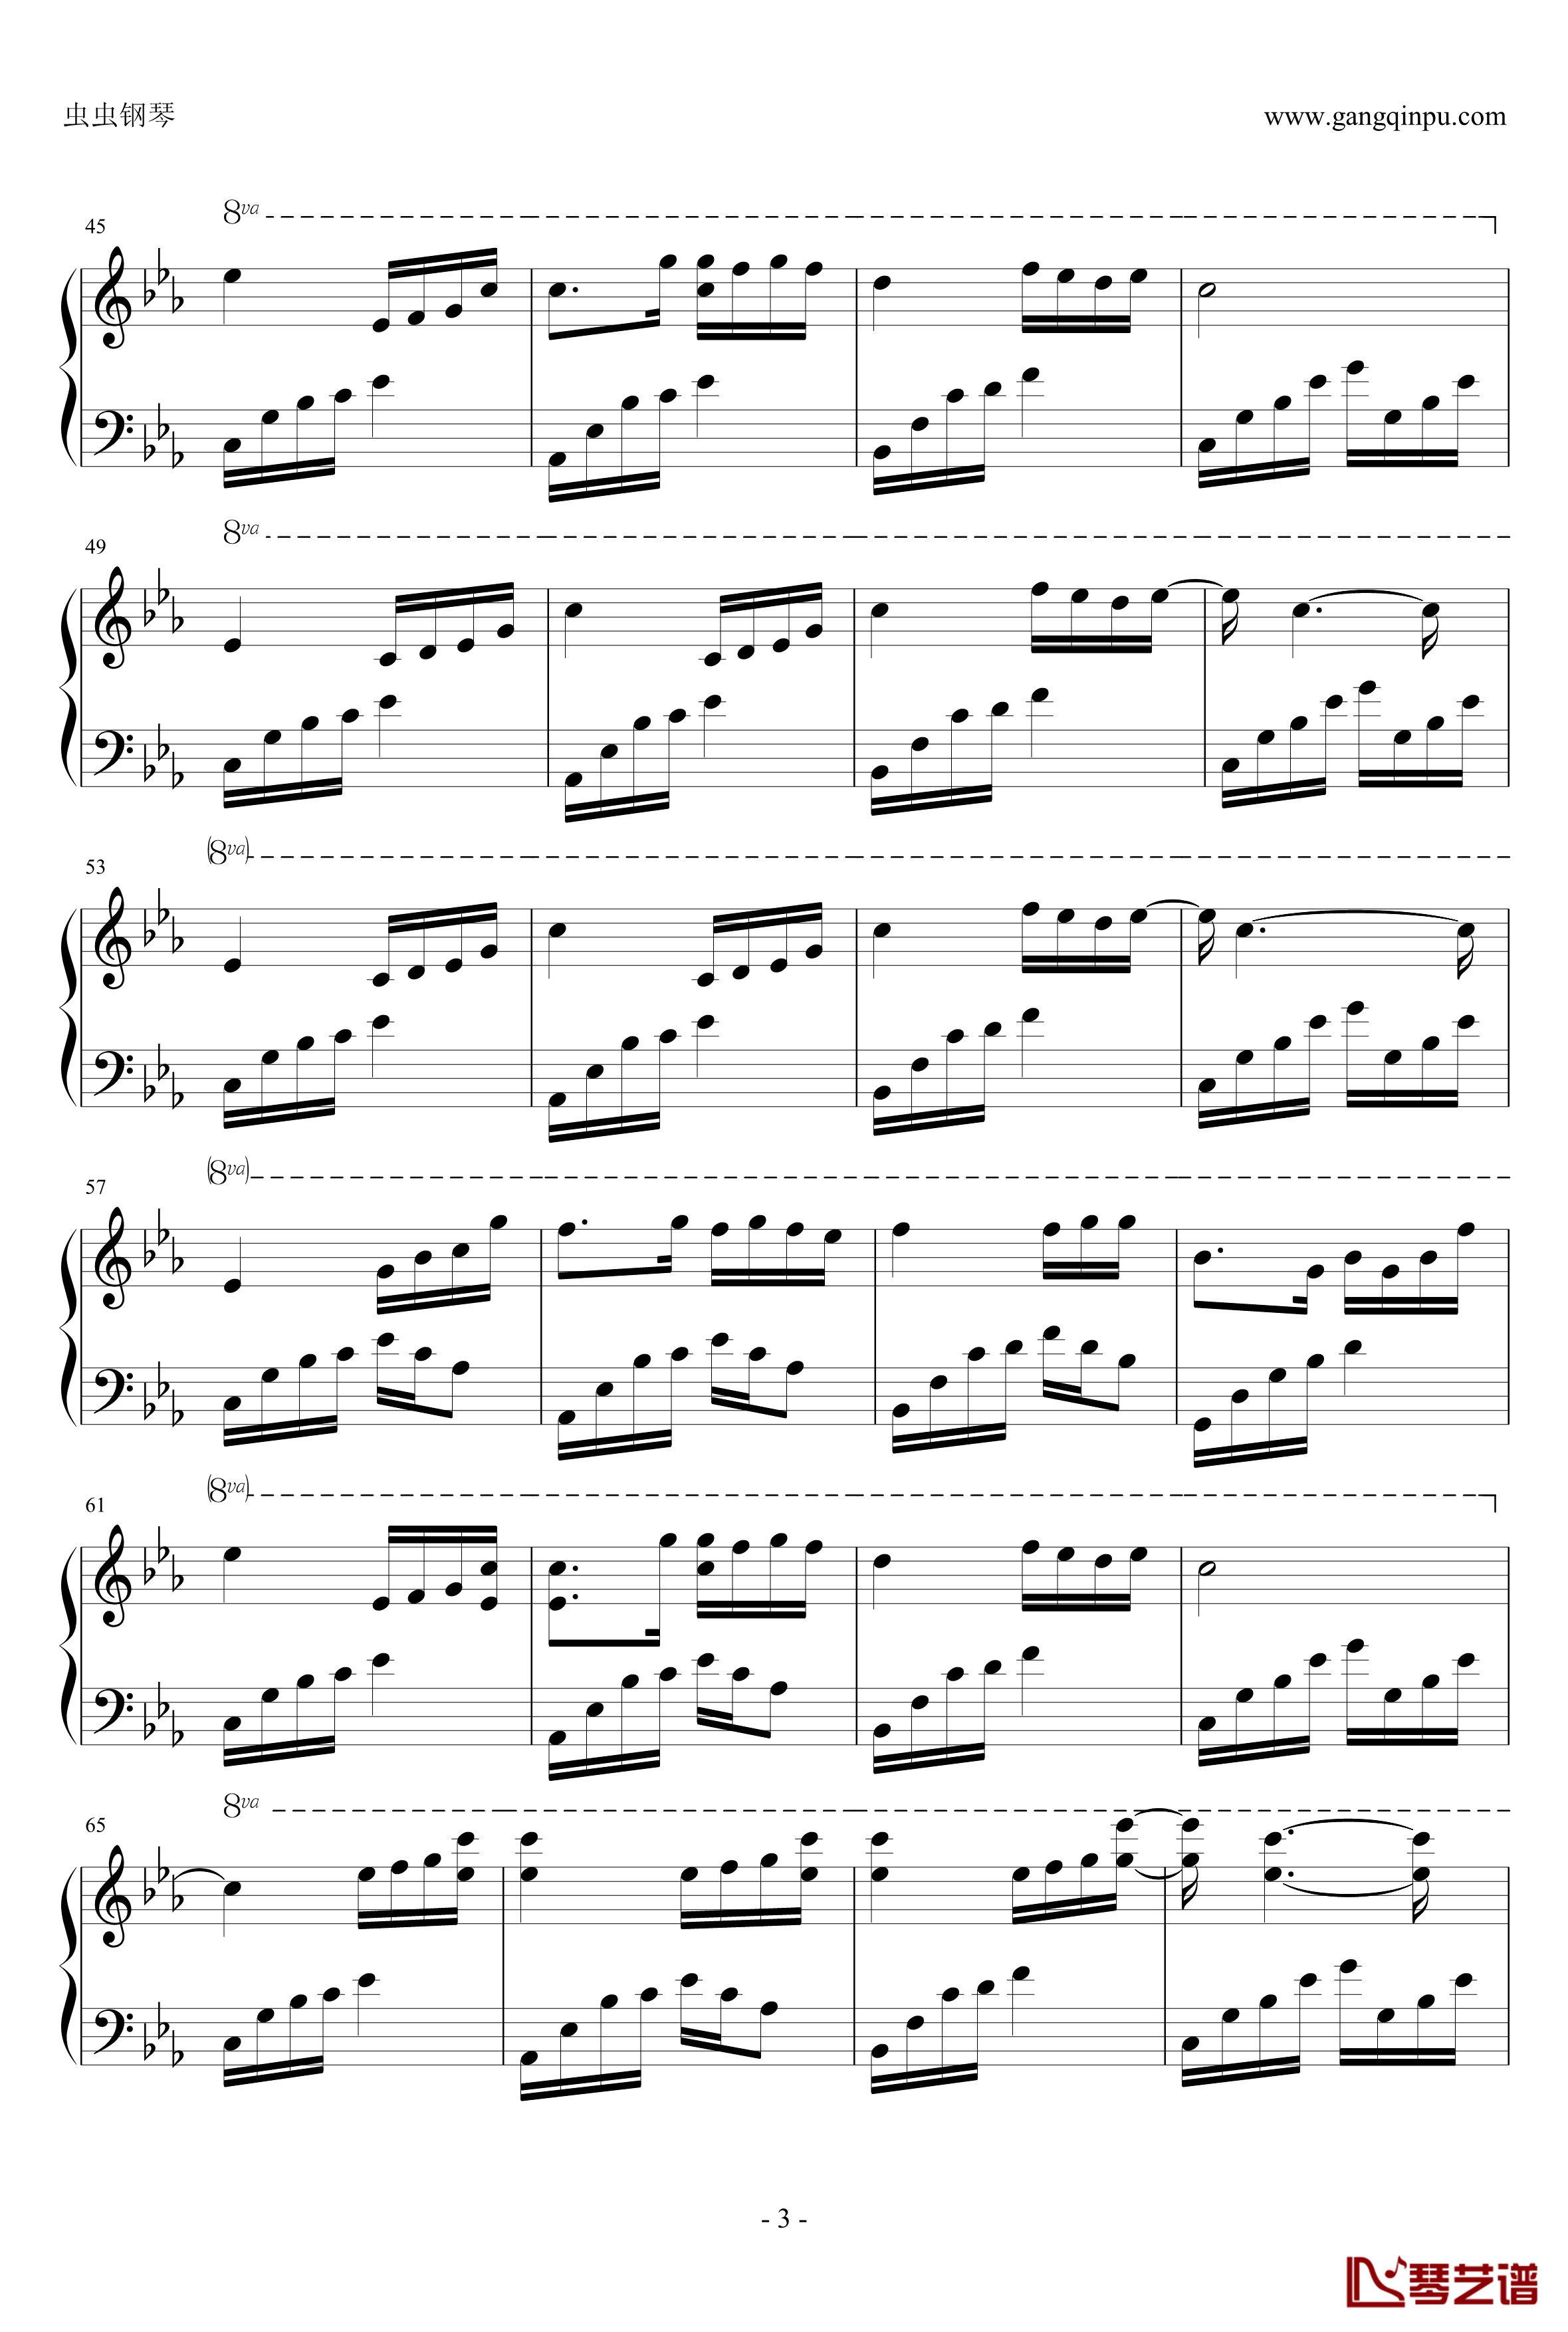 夜的钢琴曲五钢琴谱-绝对完整版-石进3